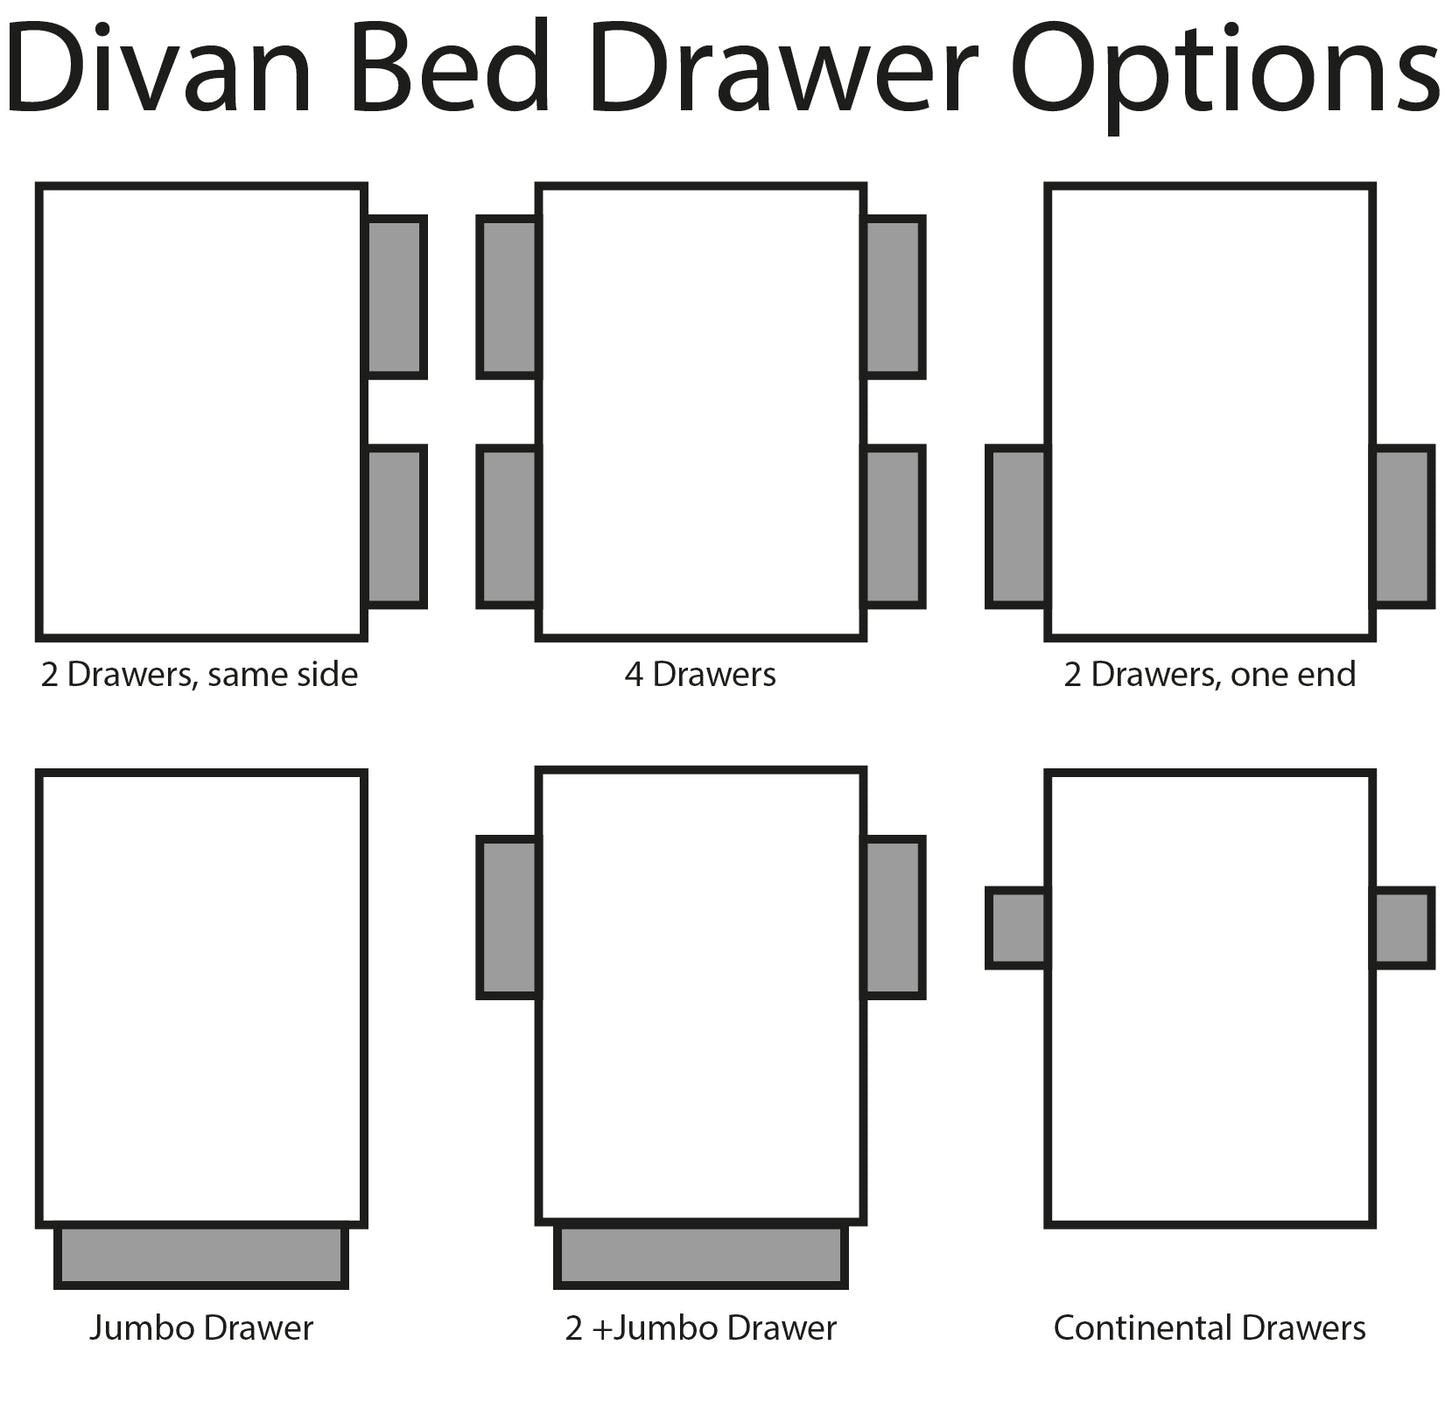 Comfy One Divan Bed